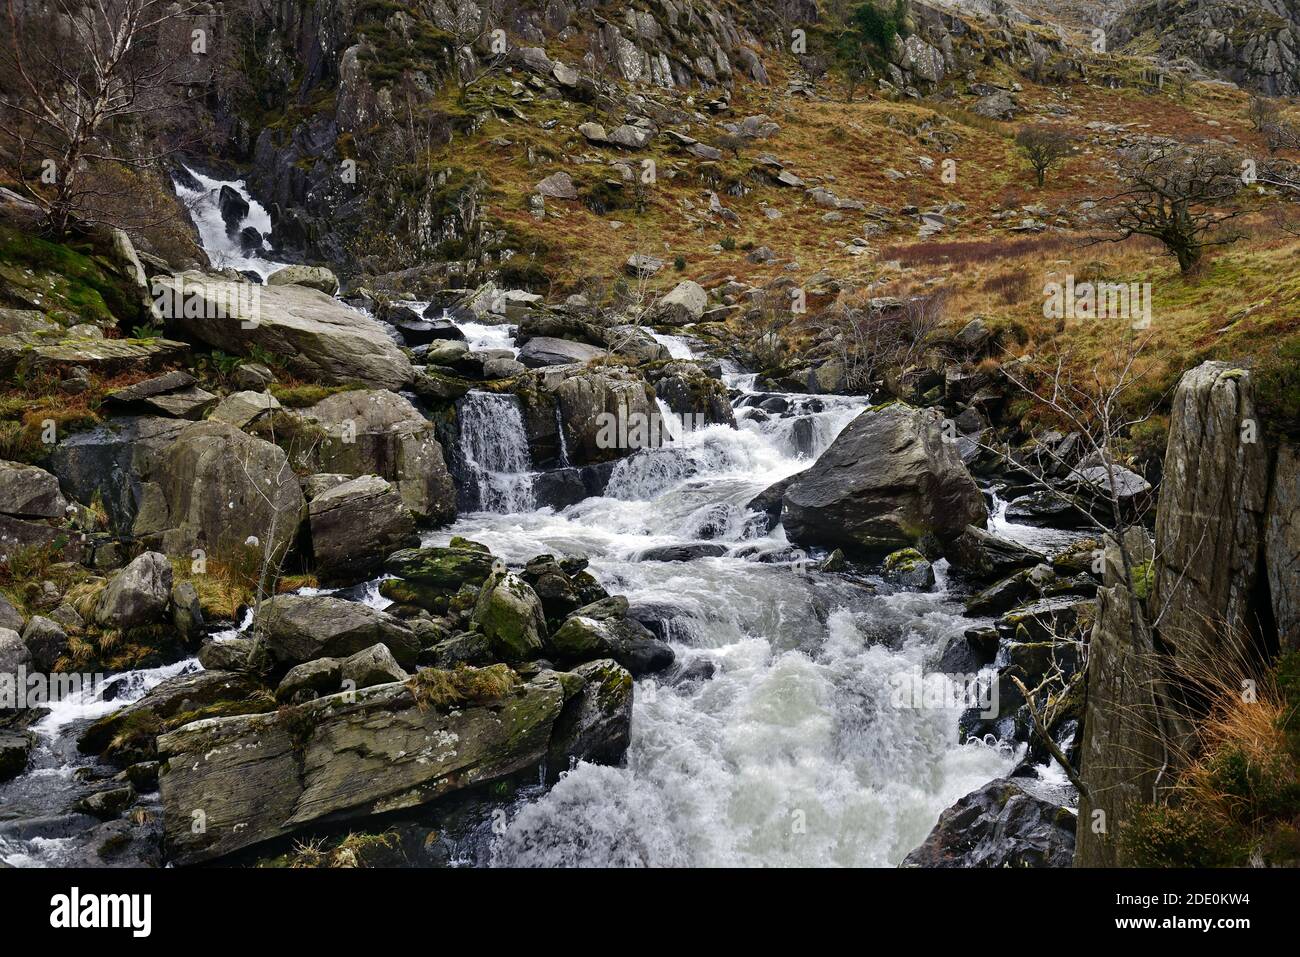 On y voit le terrain rocheux de la vallée du Nant Ffrancon, situé entre le Glyderau et les chaînes de montagne de Carneddau à Snowdonia. Banque D'Images